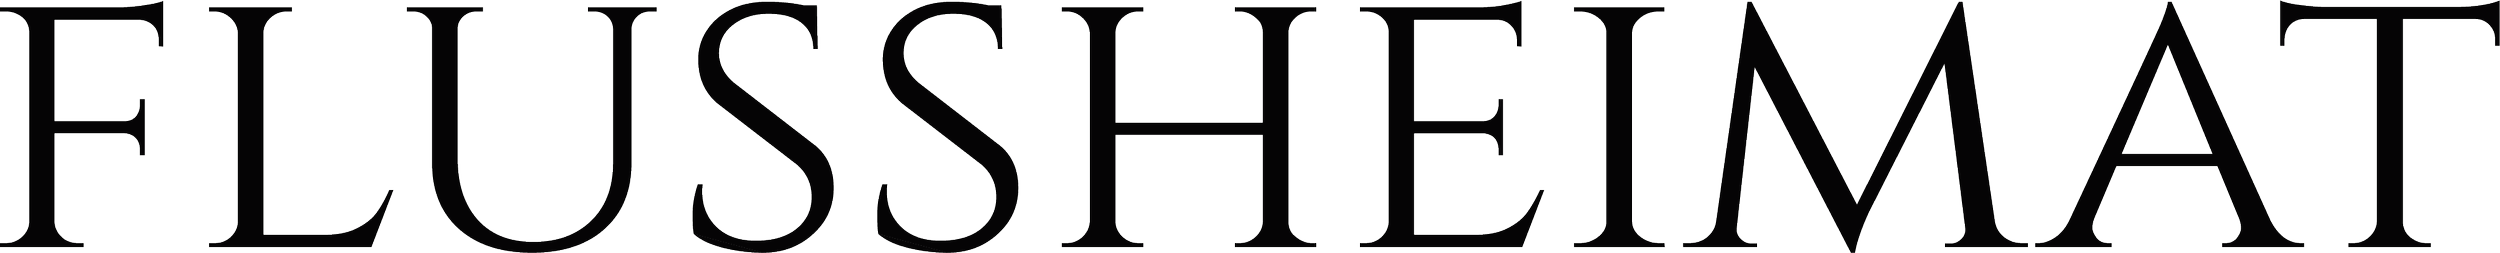 Flussheimat Logo key.png